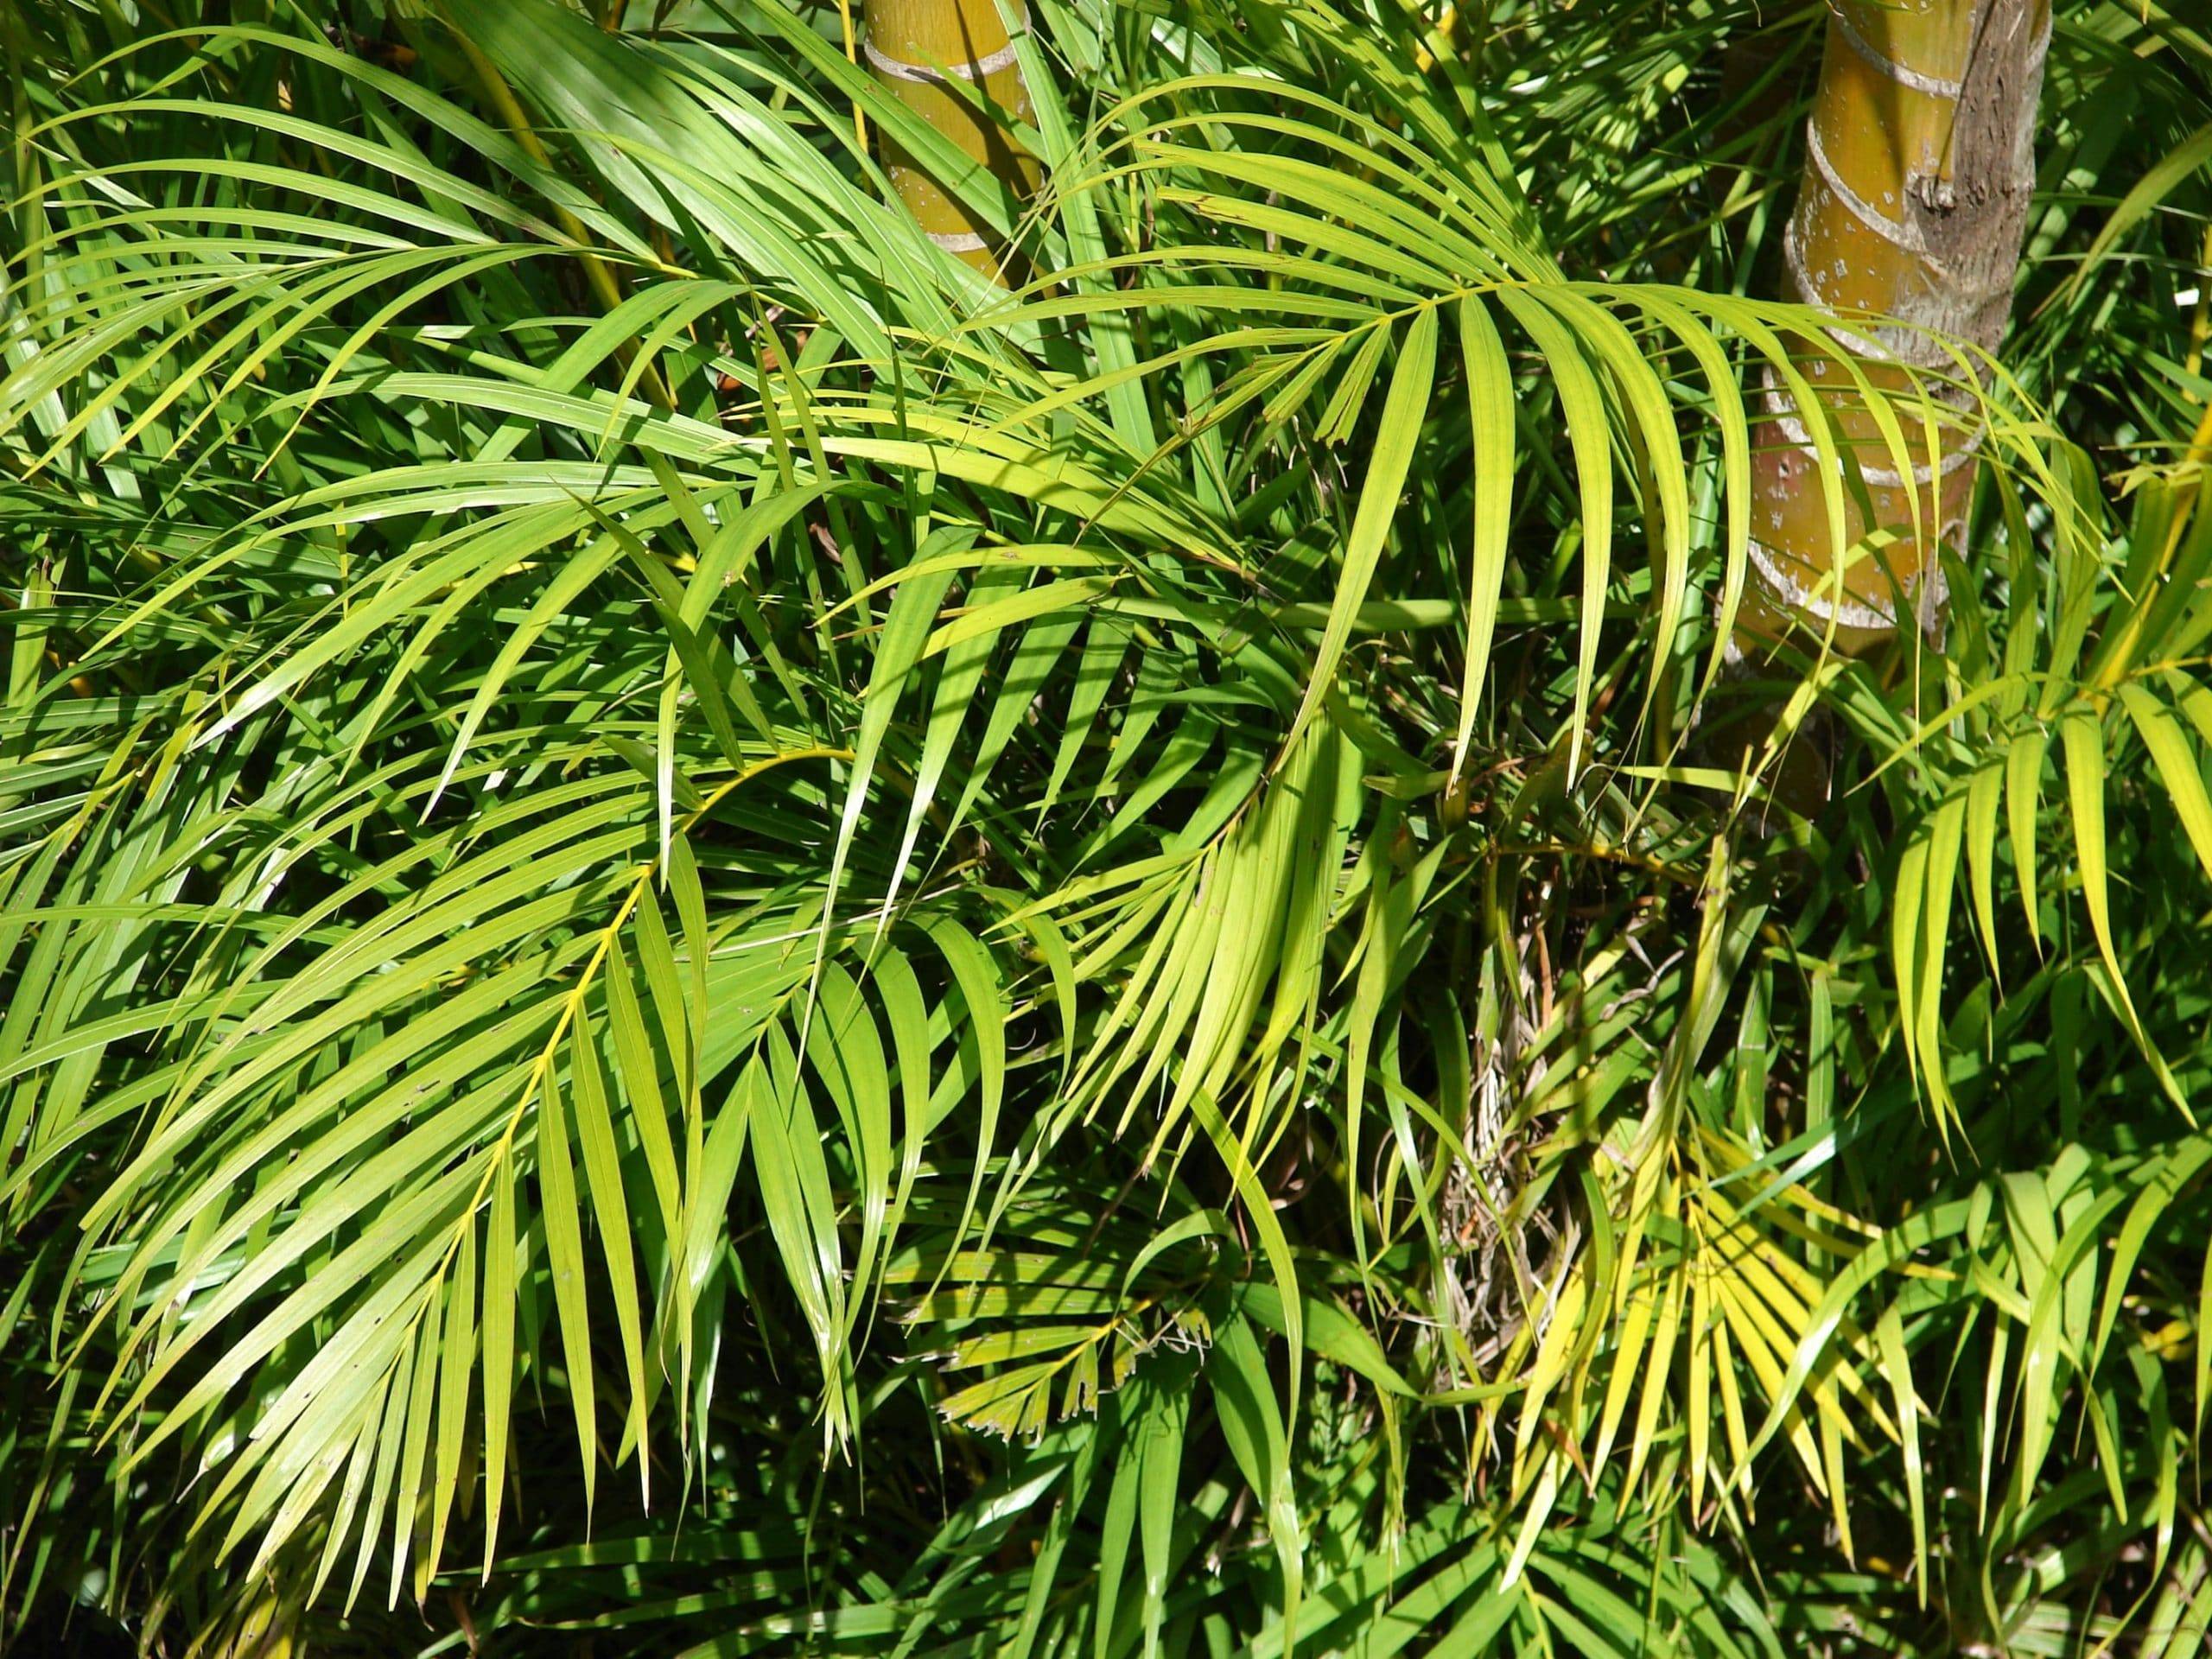 Арека пальма: описание и уход в домашних условиях